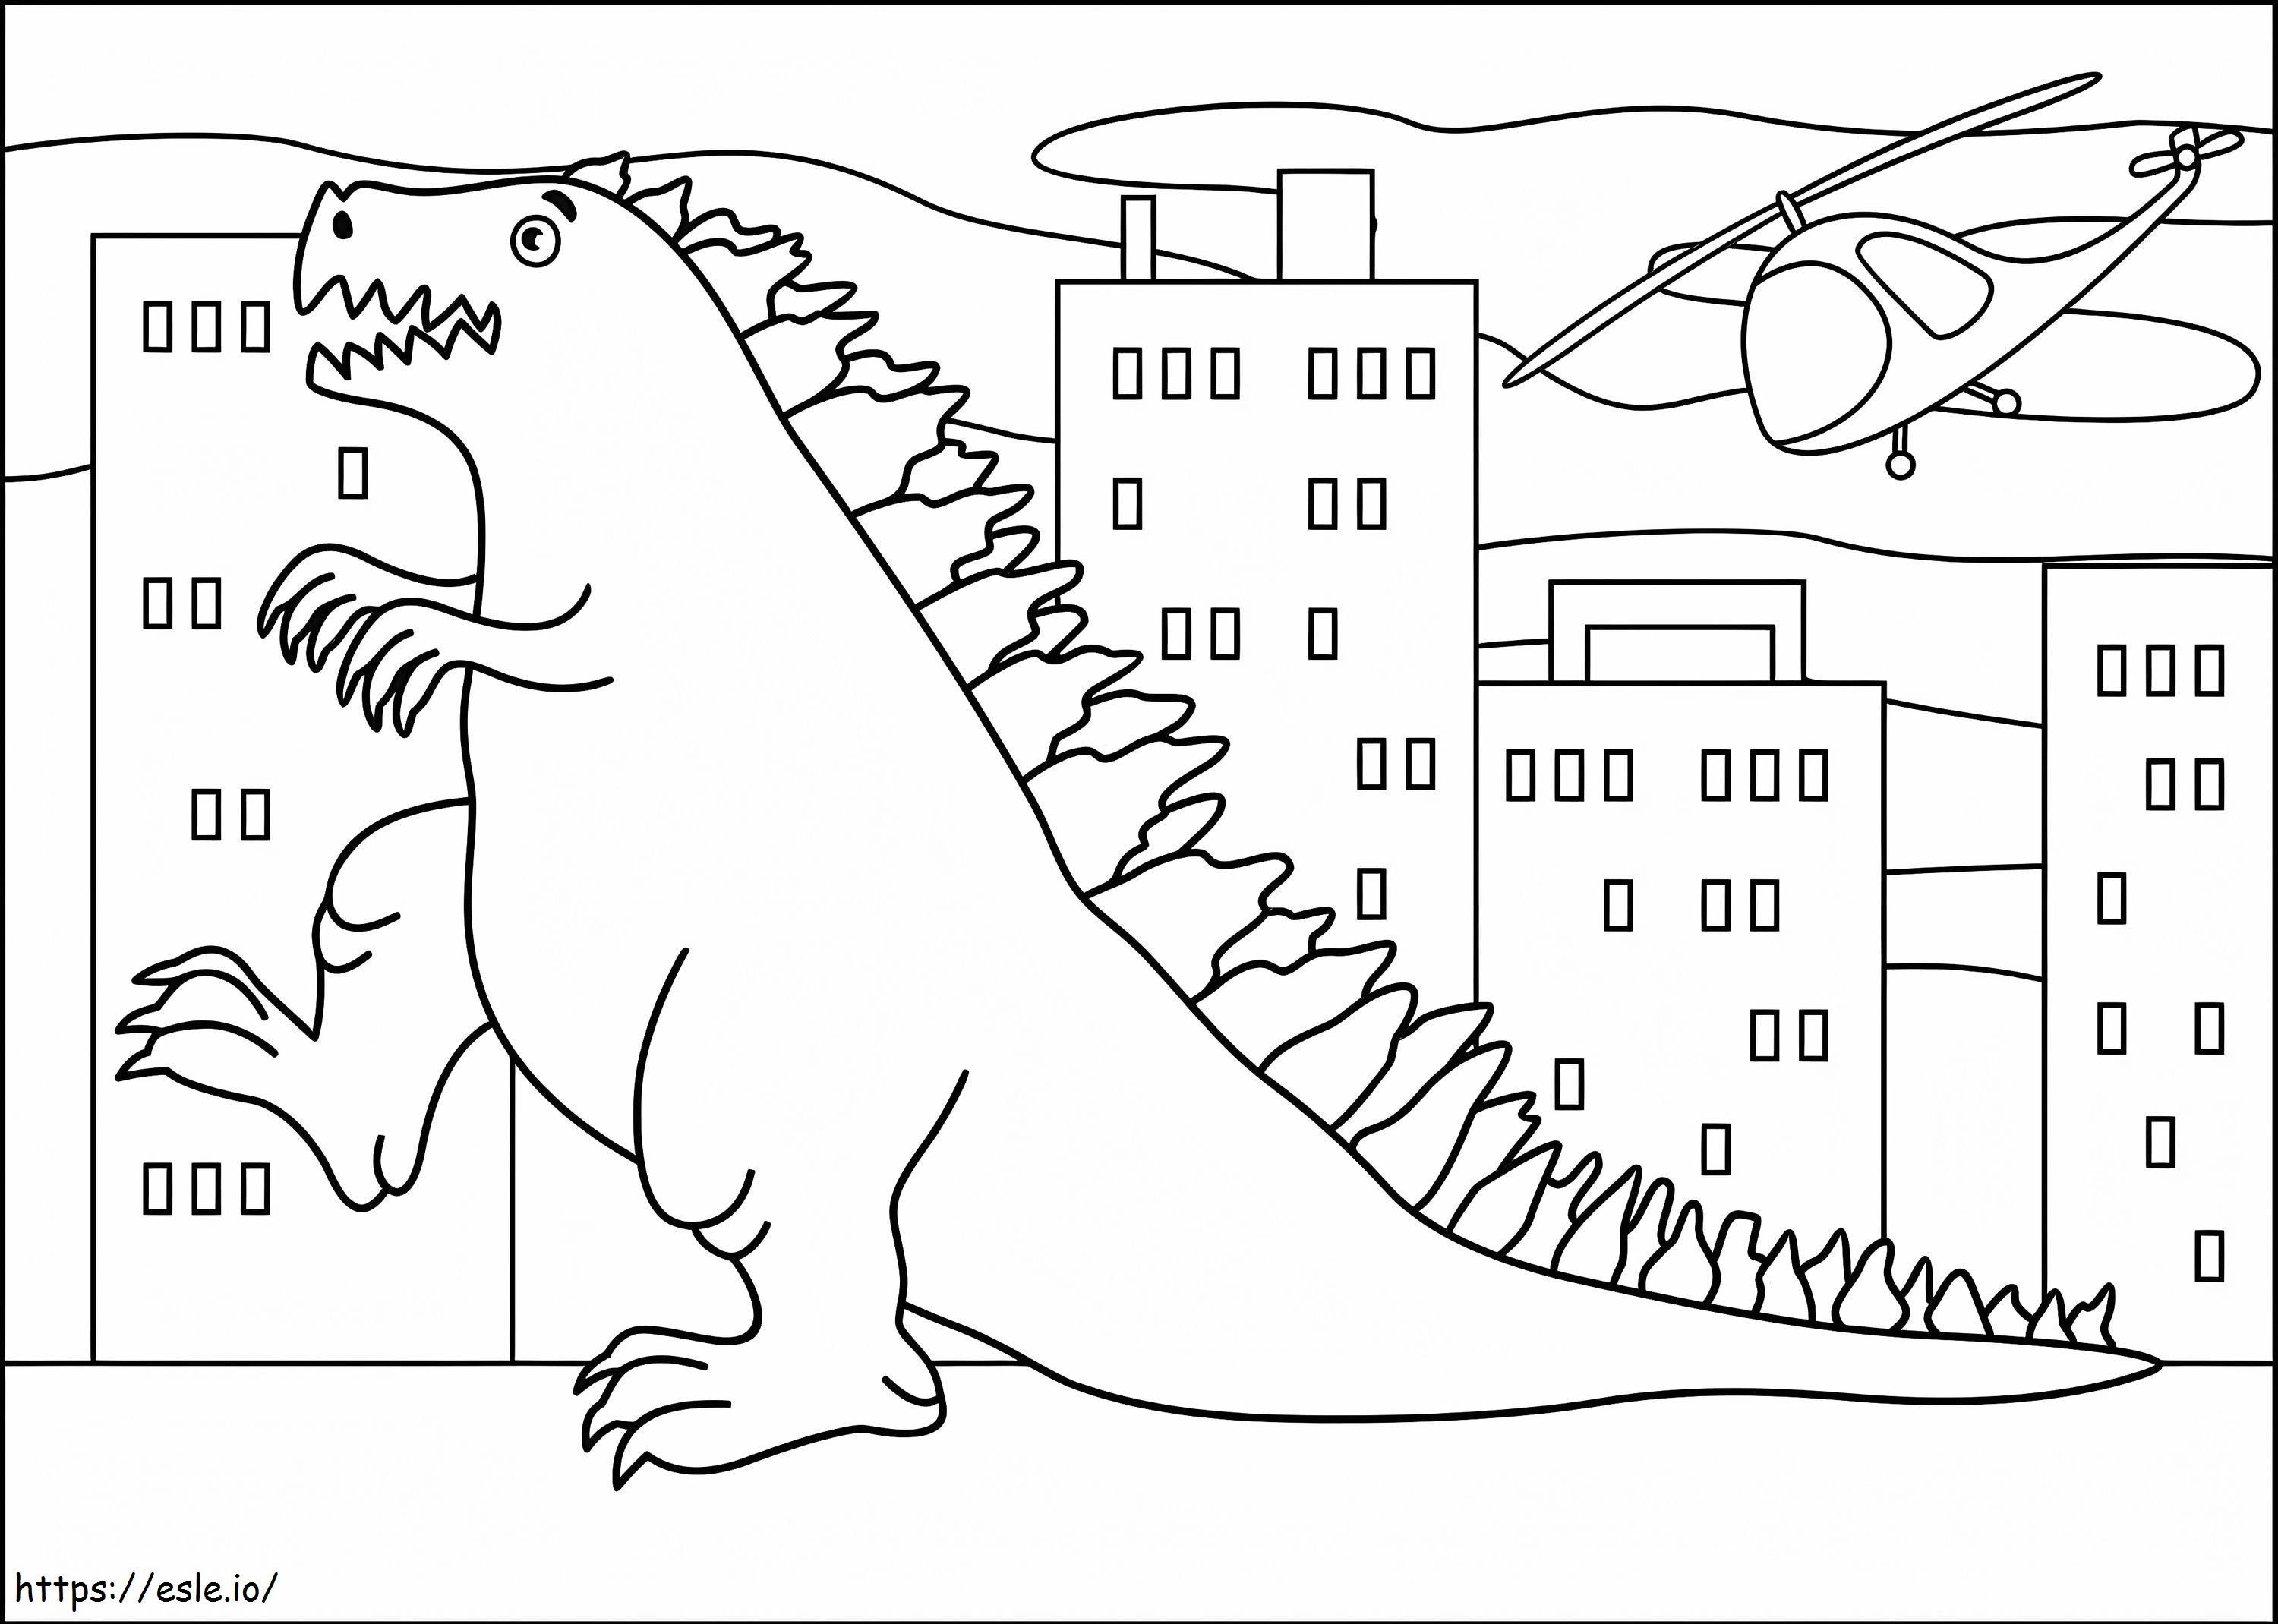 Godzilla Drawing coloring page